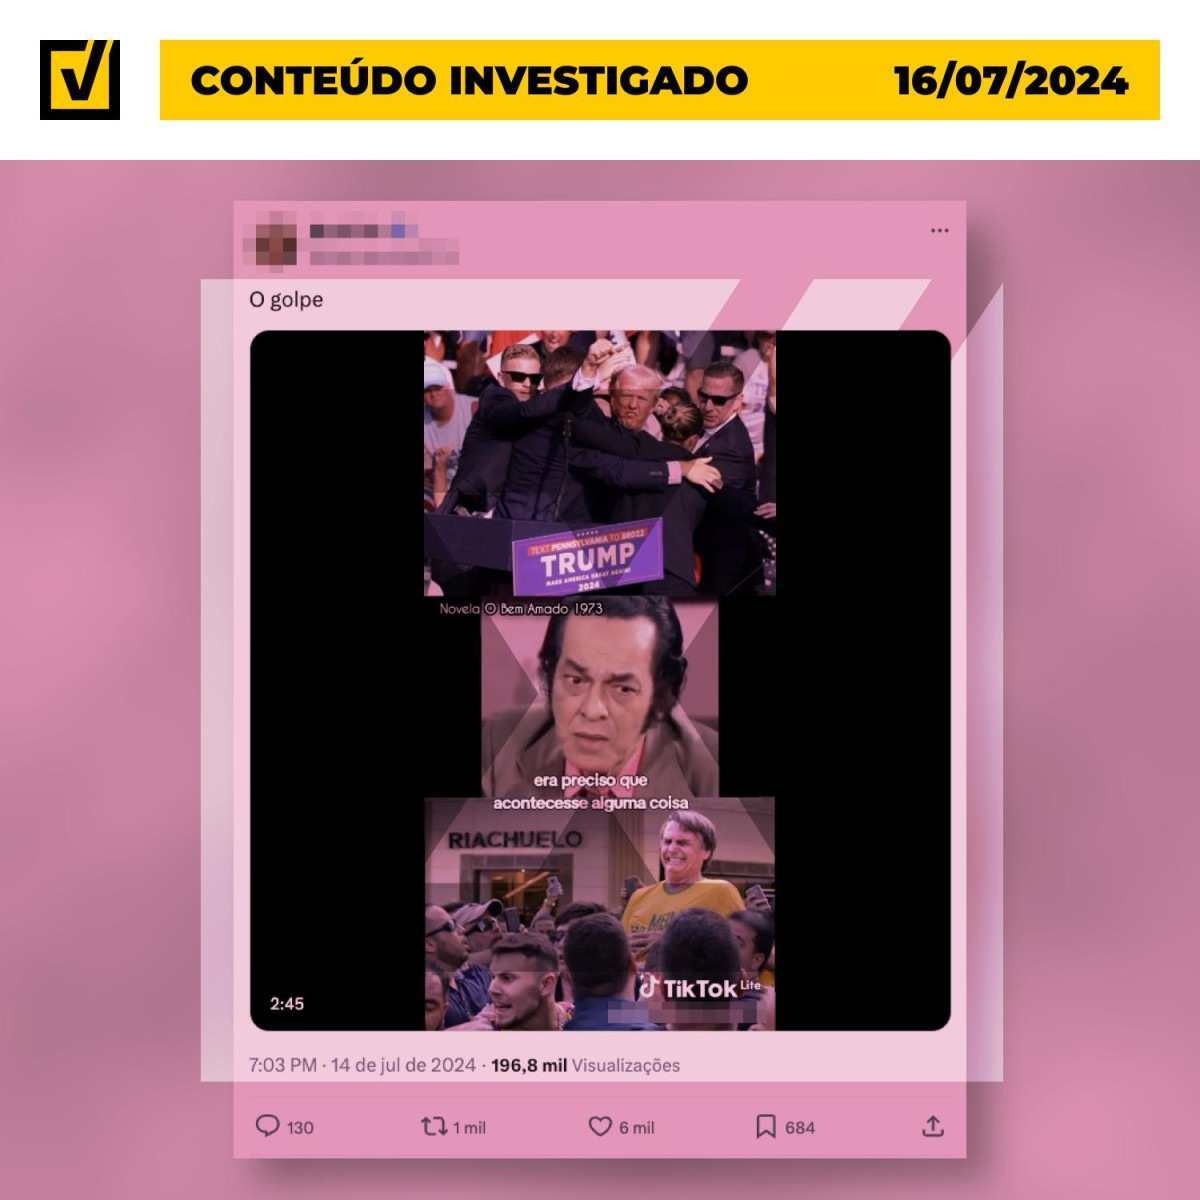 Post engana ao afirmar que atentados contra Trump e Bolsonaro foram forjados